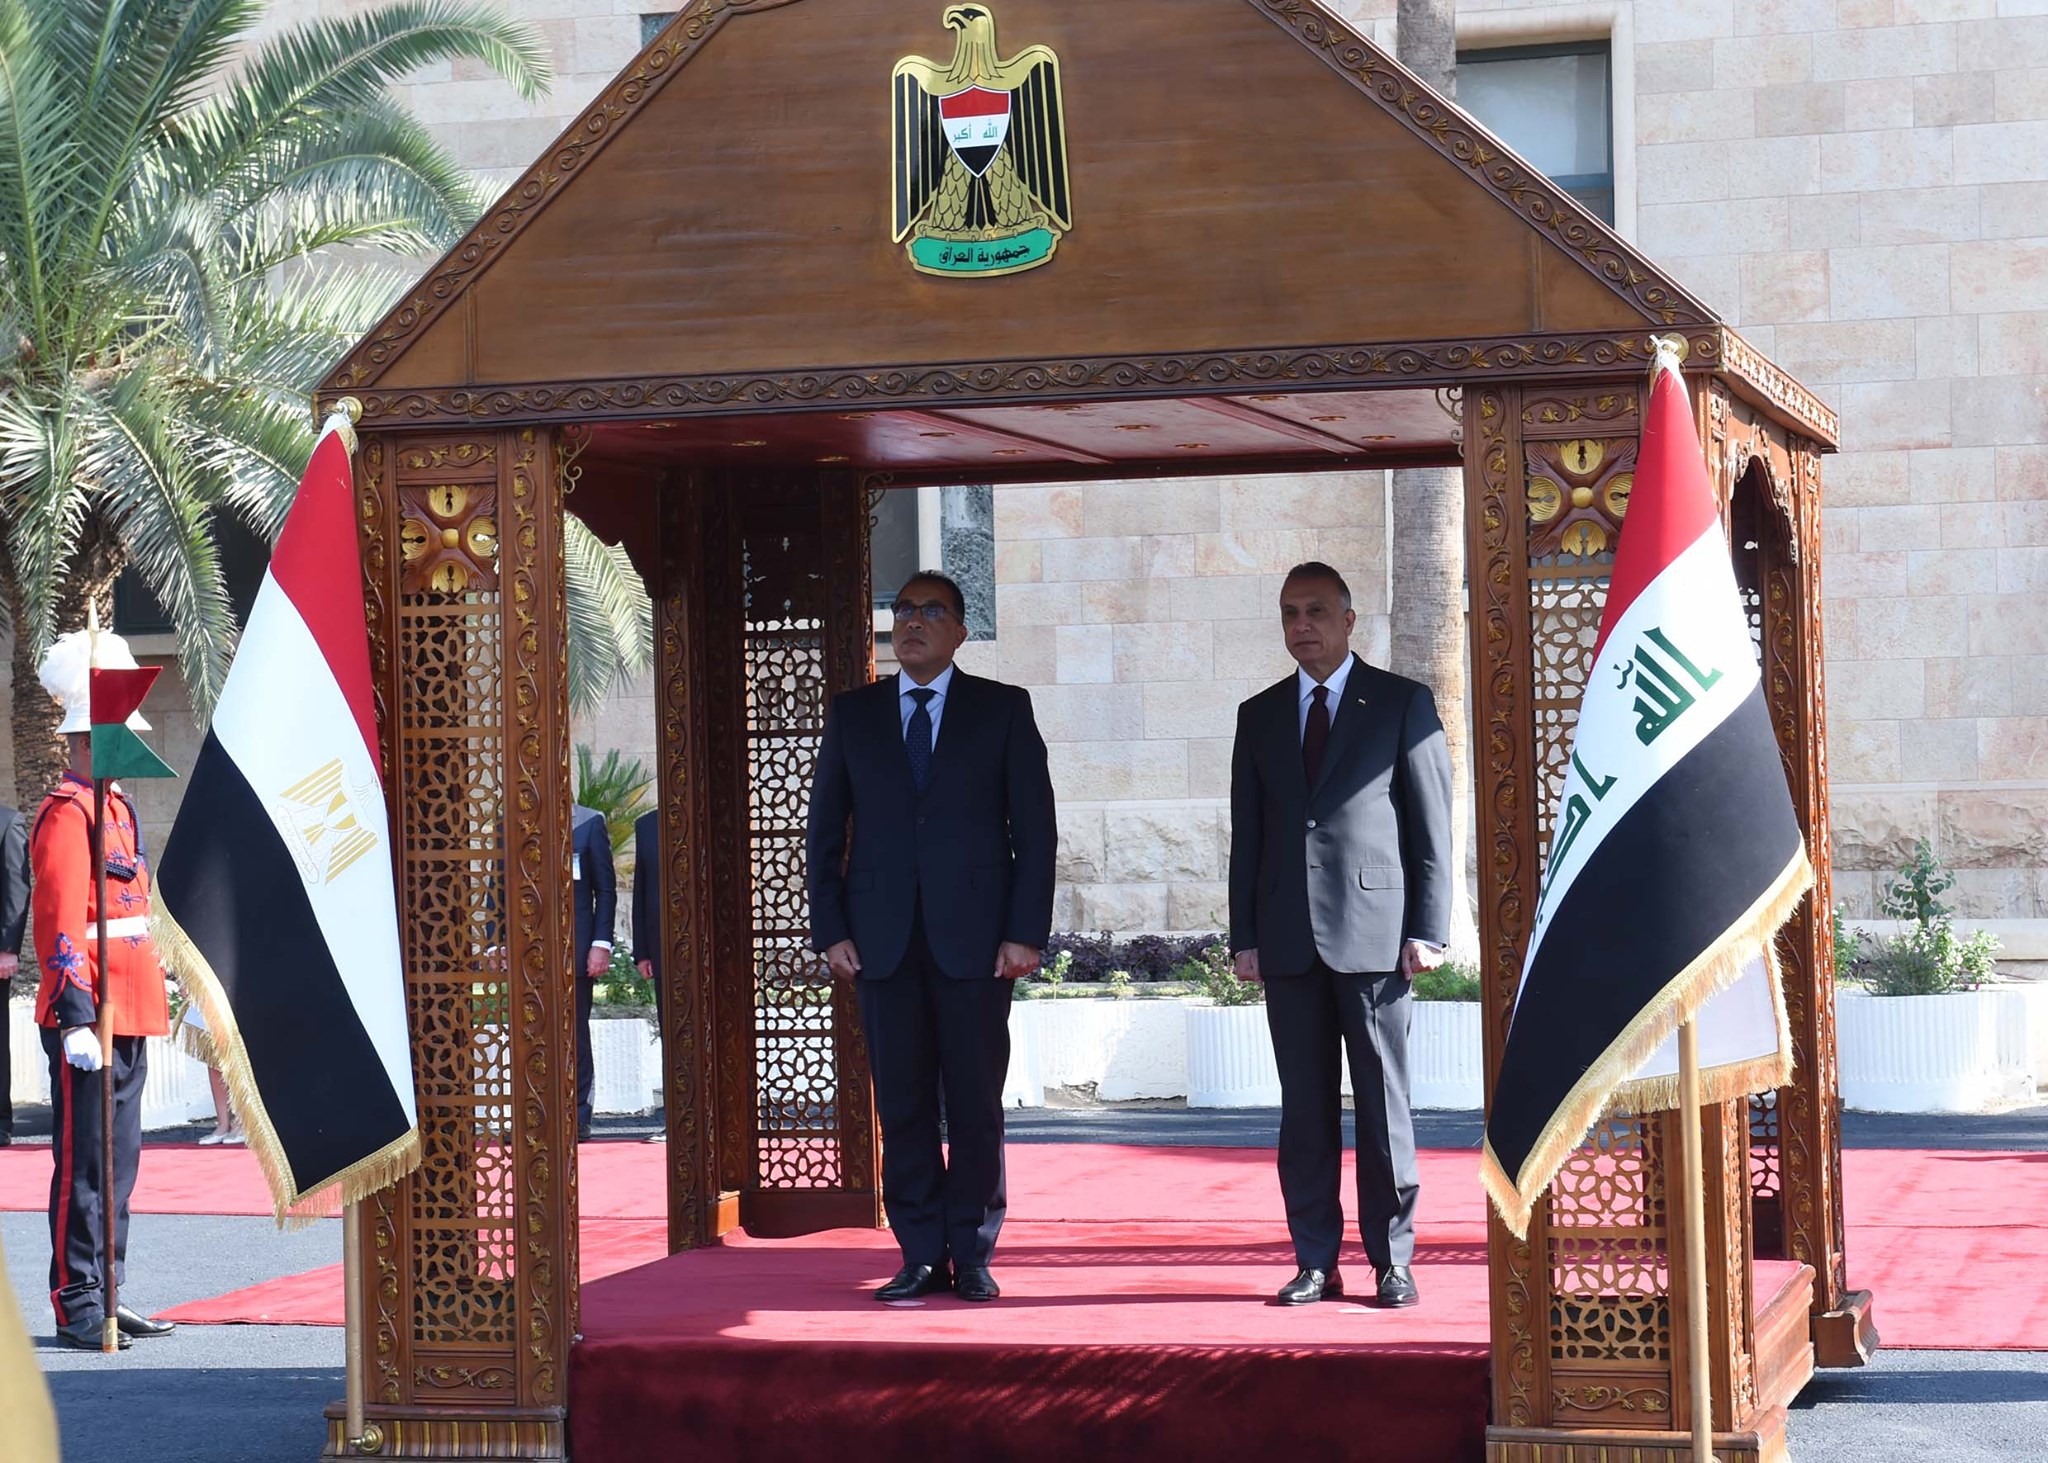 استقبال رسمى لرئيس الوزراء بمقر مجلس الوزراء العراقى تمهيدا لبدء أعمال اللجنة العليا المشتركة